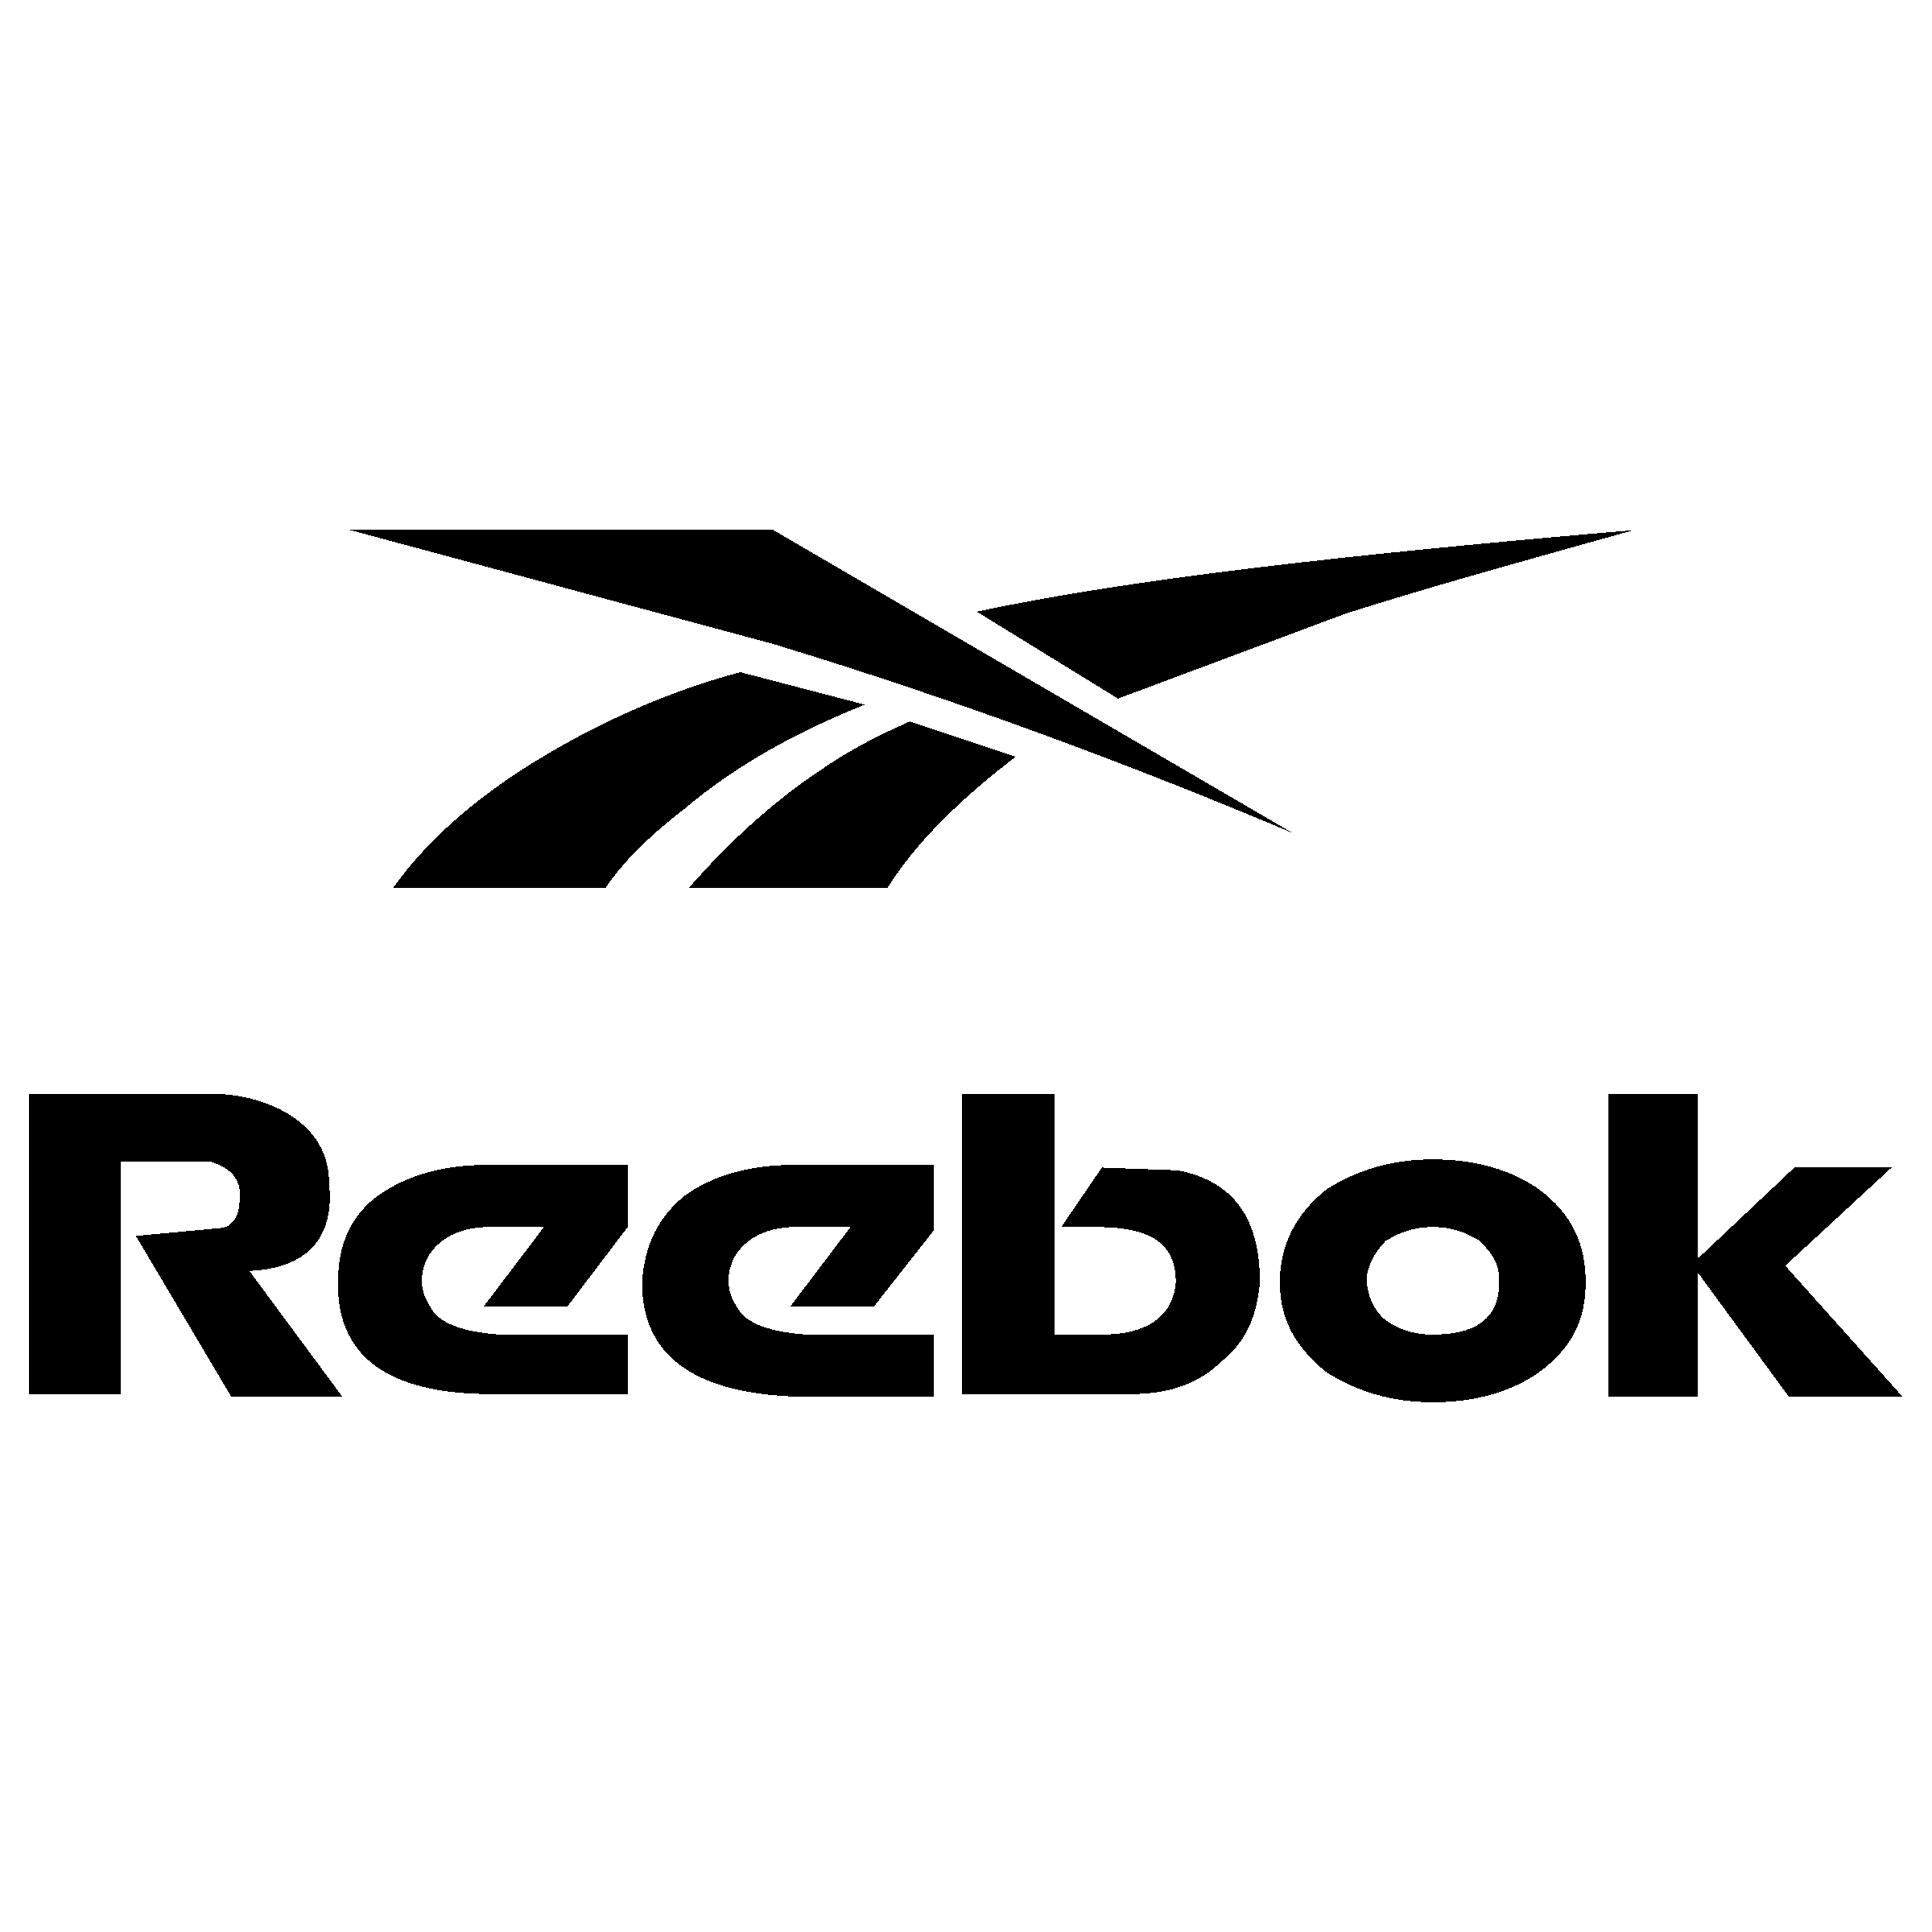 Download Reebok Old White Logo PNG | Citypng